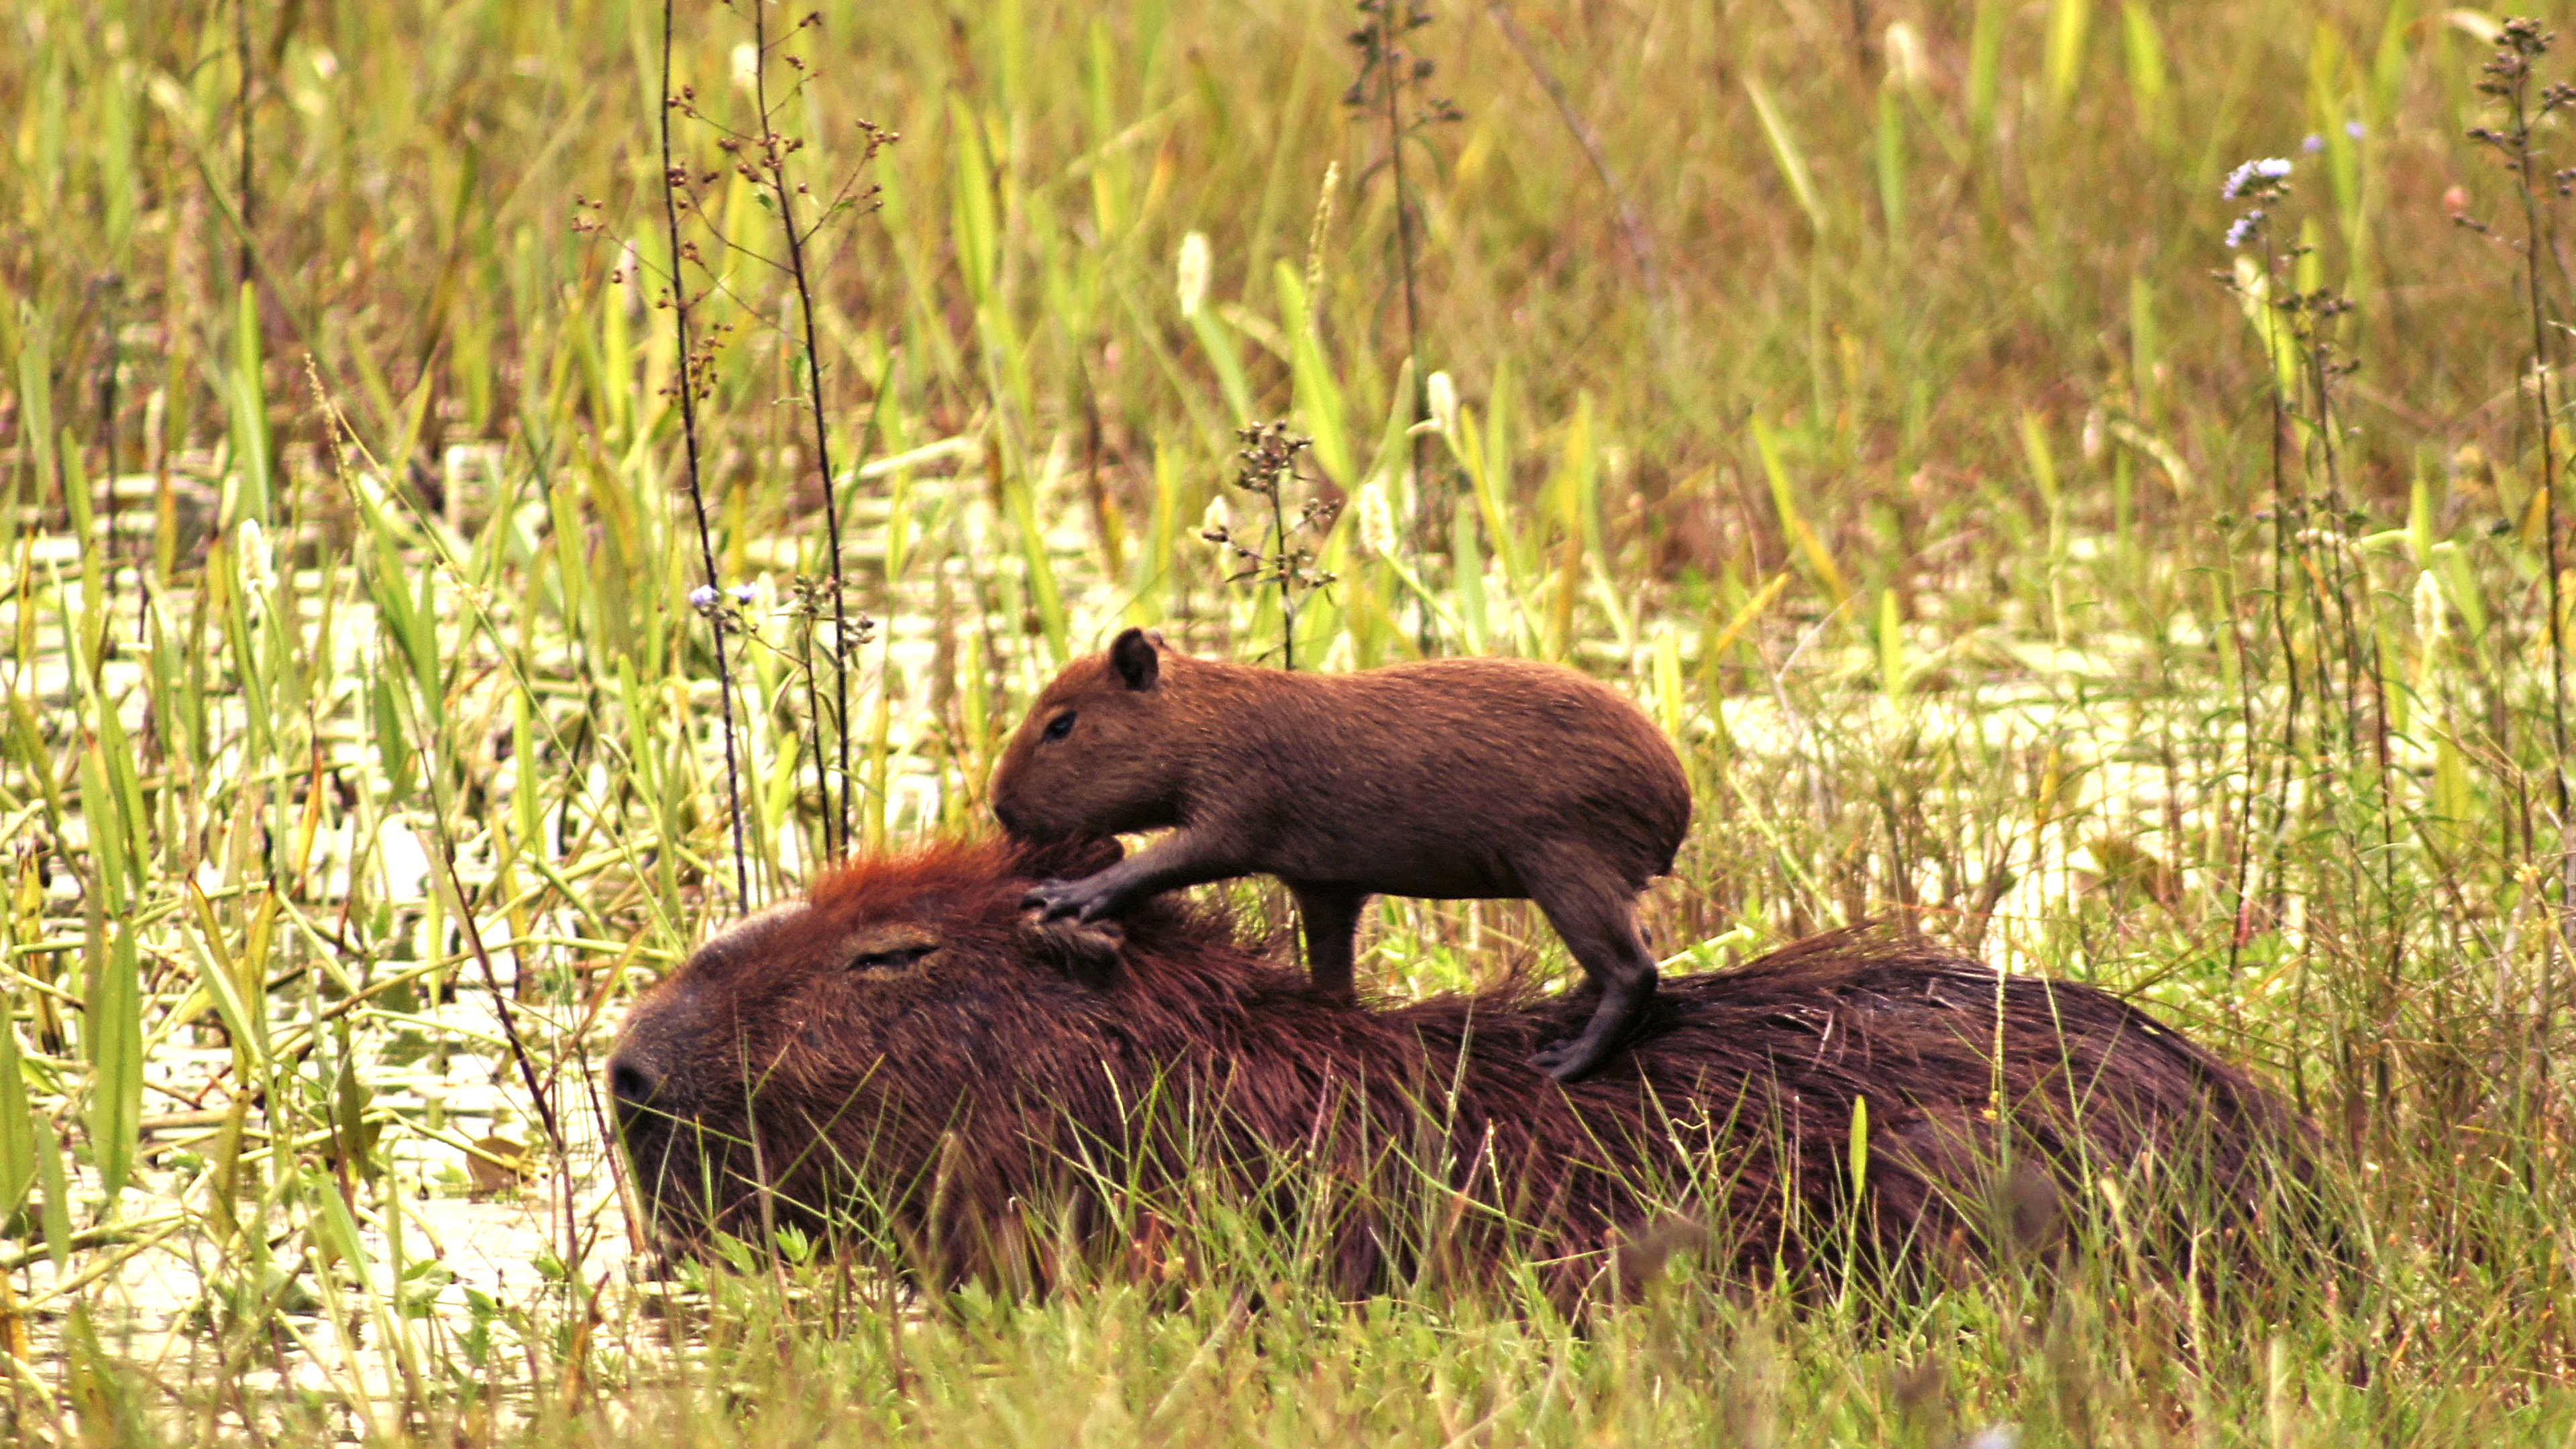 Capybara-Jungtier auf dem Rücken seiner Mutter